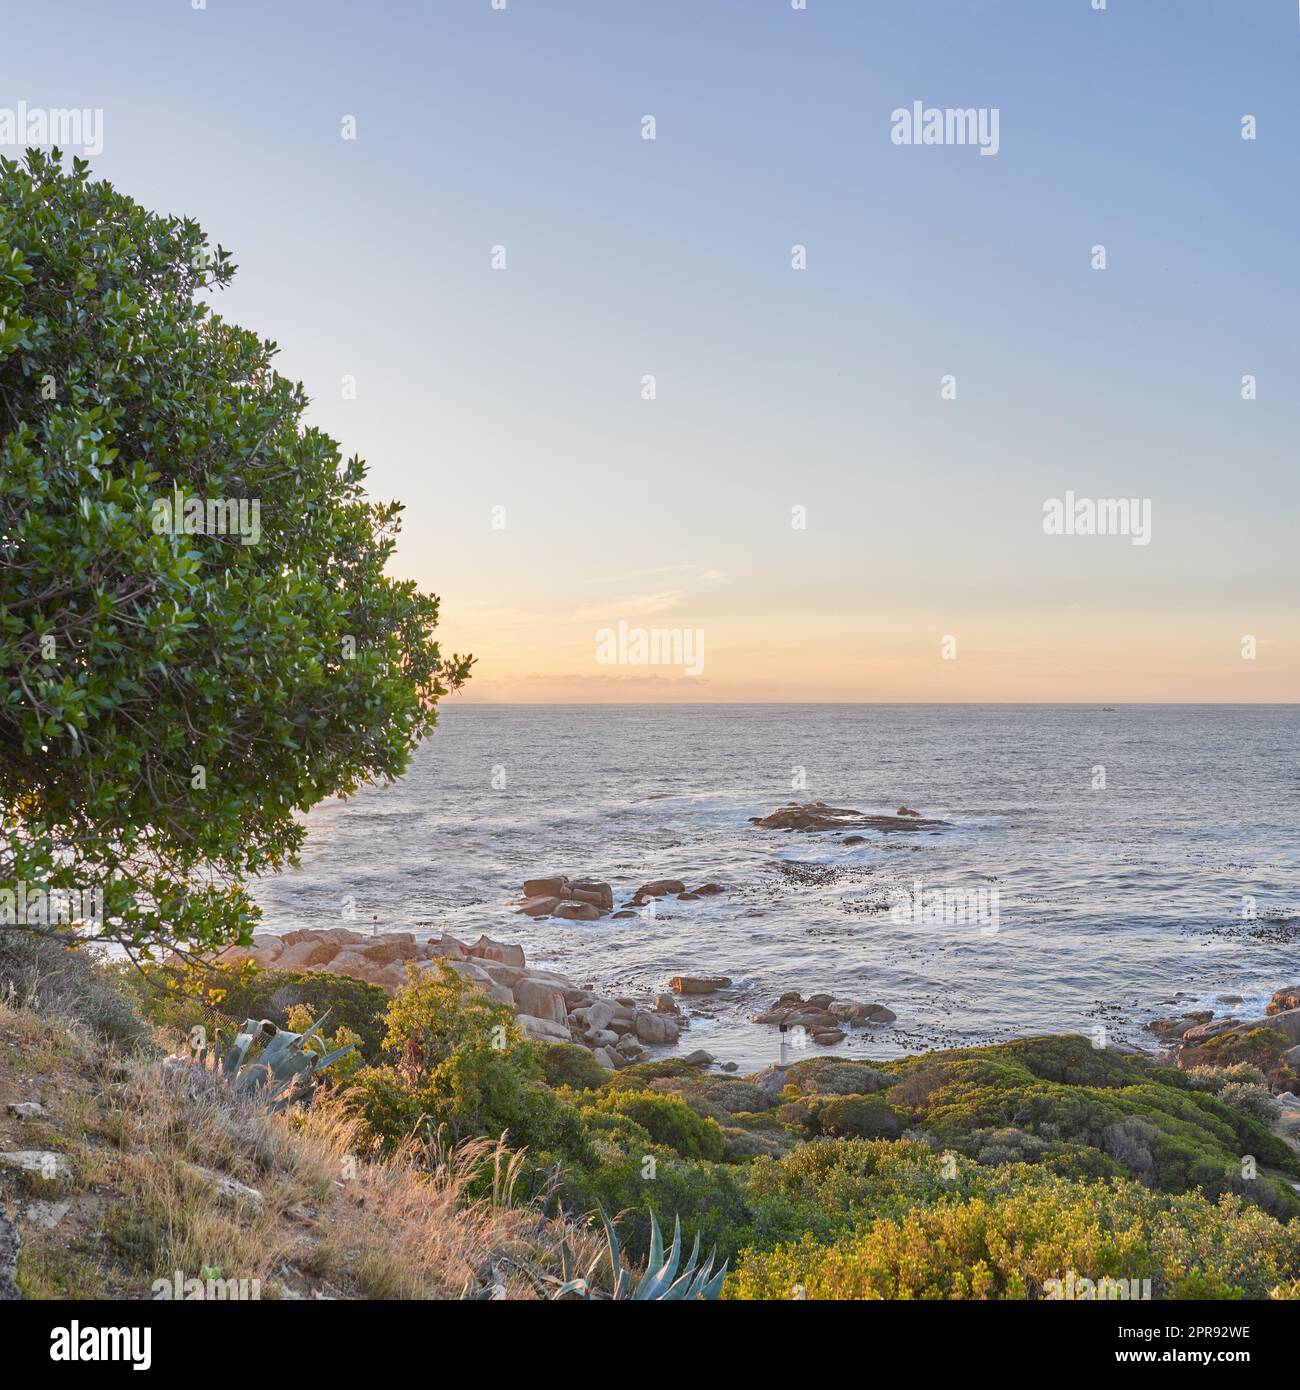 Paysage océanique du parc de Table Mountain au Cap avec espace de copie. Vue sur la mer au coucher du soleil avec rochers et herbe verte, arbustes, buissons et un arbre parfait pour la randonnée, vacances ou vacances Banque D'Images